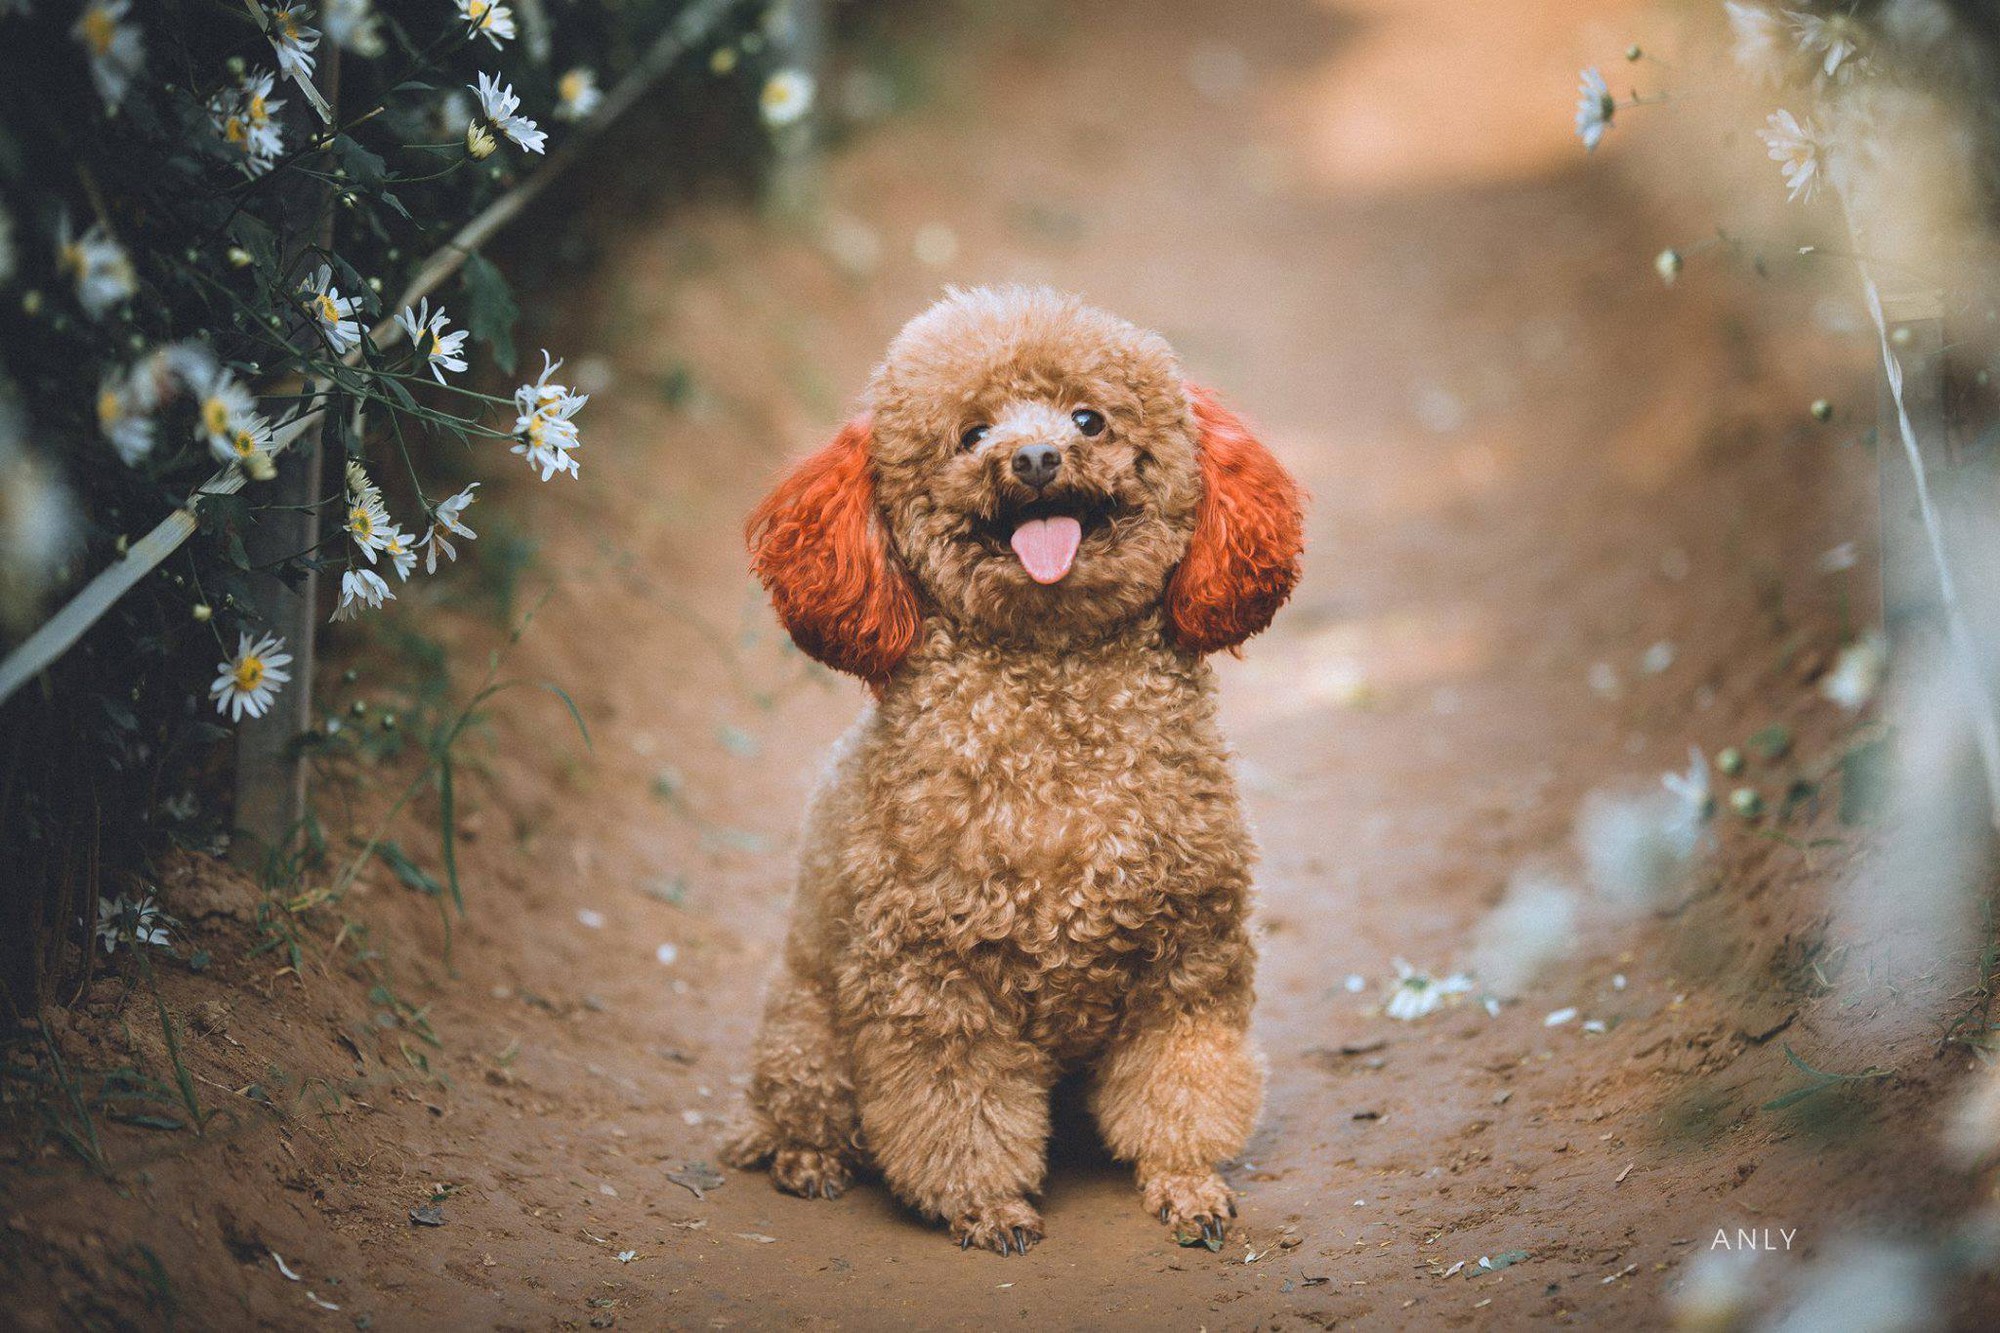 Chó poodle là một giống chó thông minh với ngoại hình quyến rũ, chúng sẽ khiến bạn say đắm ngay từ cái nhìn đầu tiên. Xem hình ảnh để khám phá thêm về giống chó đáng yêu này.